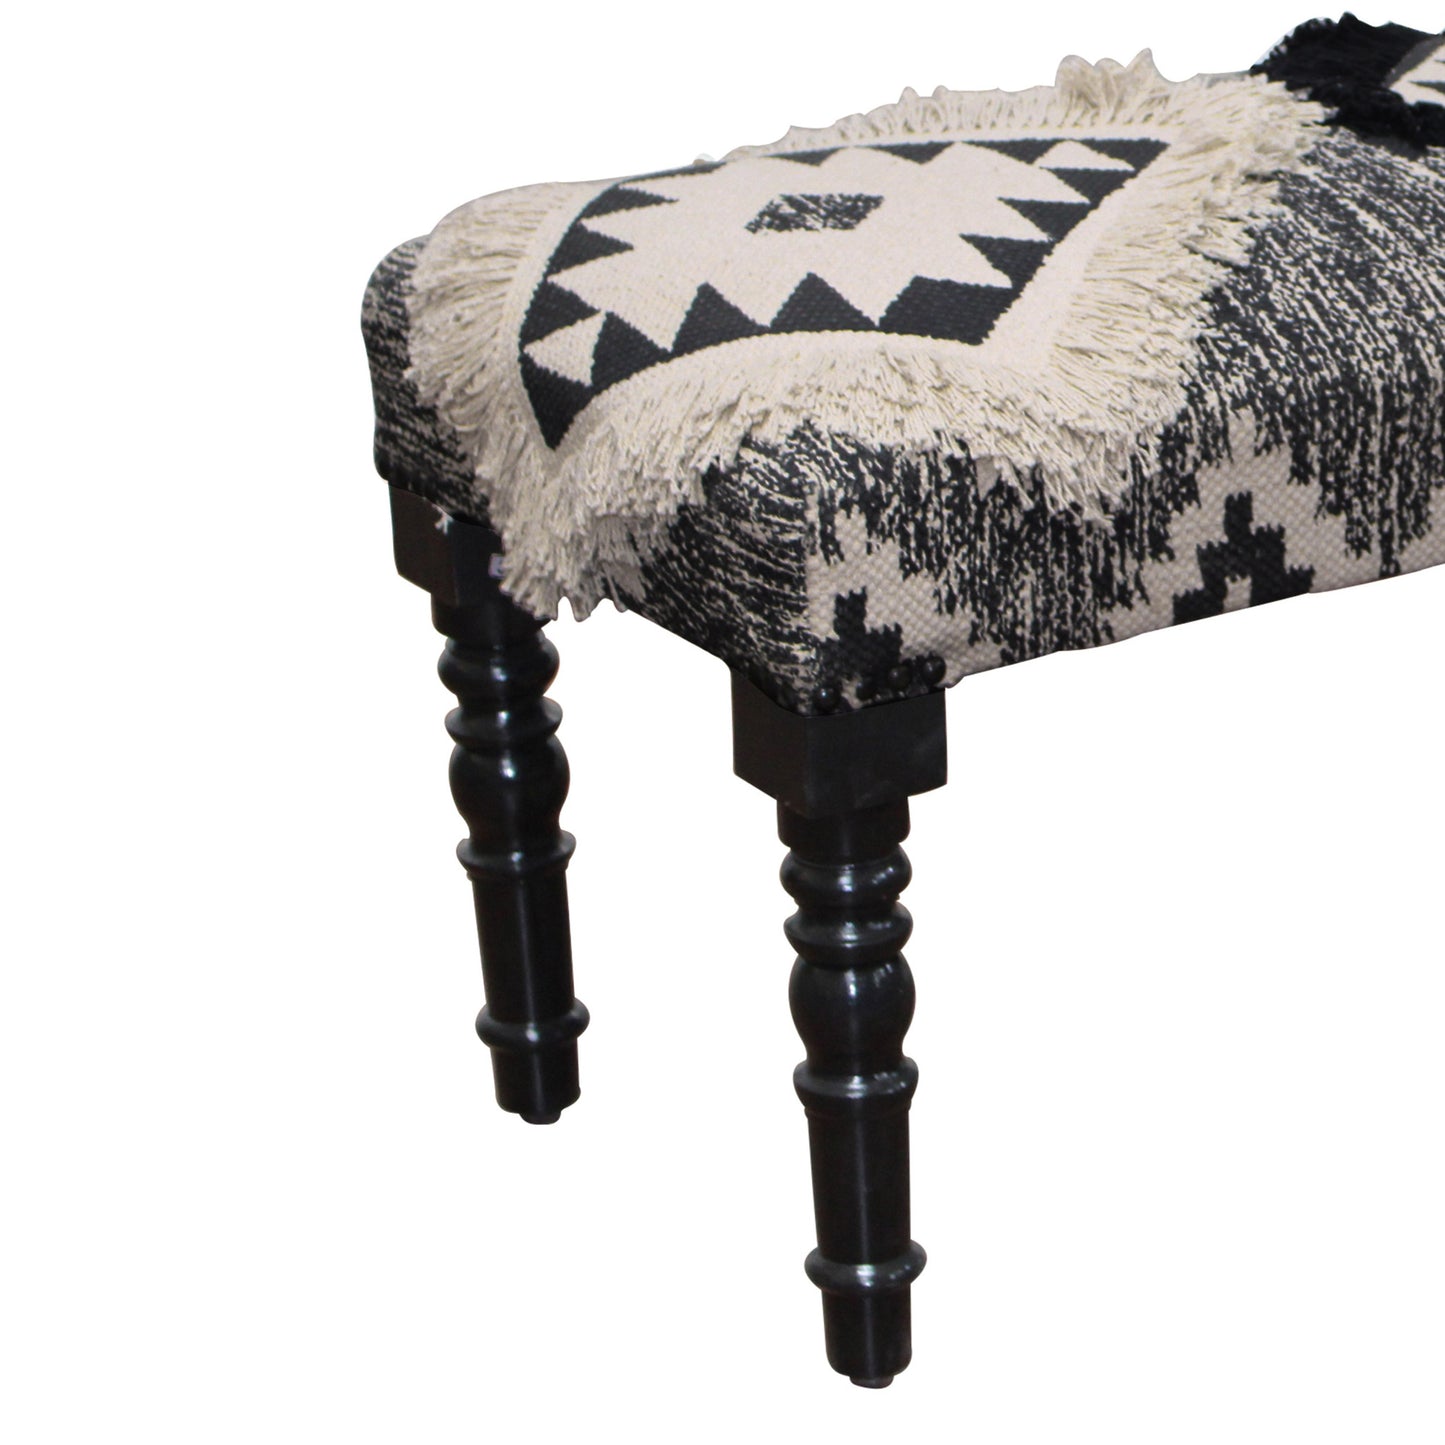 47" Black And White Black Leg Southwest Upholstered Bench